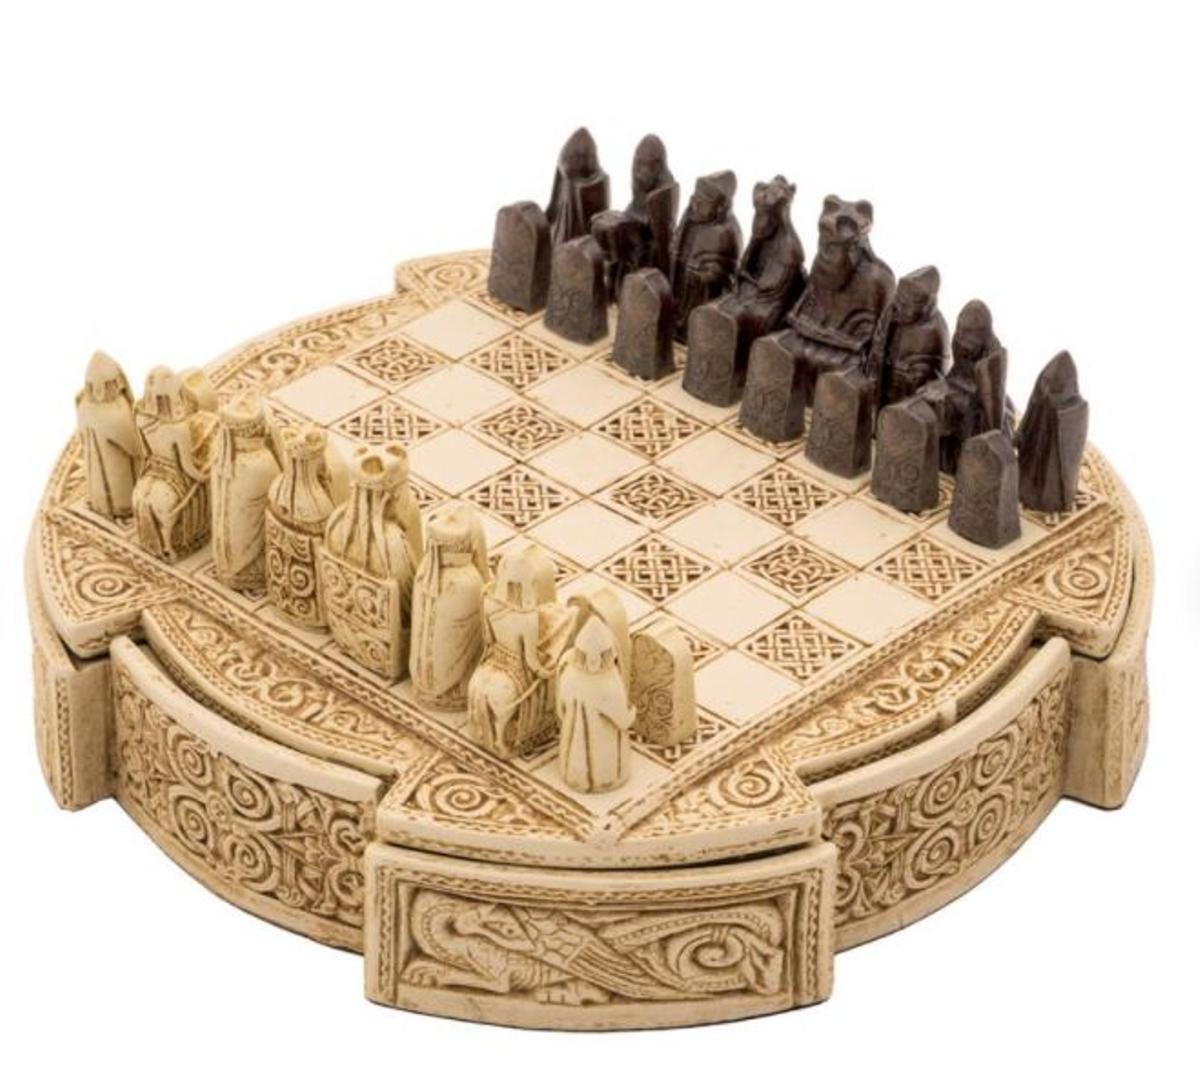 Los tableros más originales para jugar al ajedrez